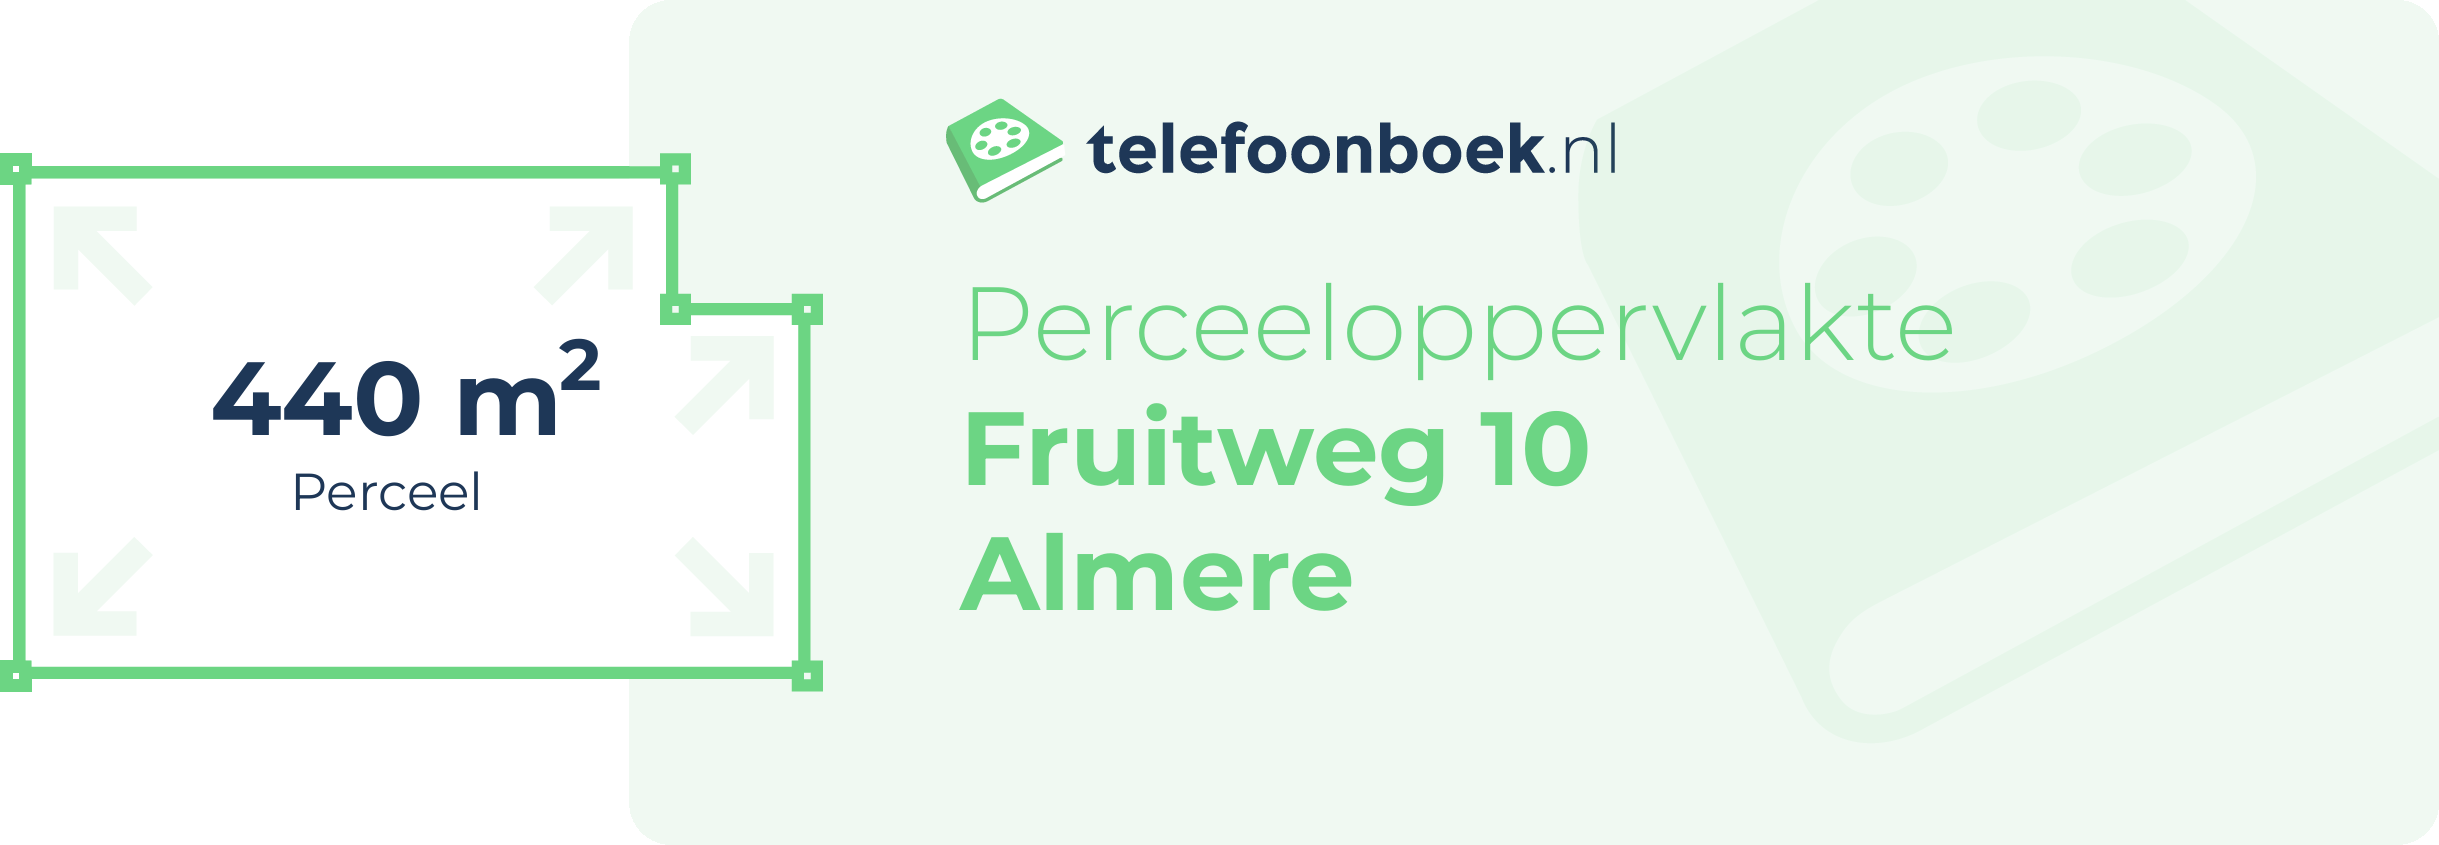 Perceeloppervlakte Fruitweg 10 Almere